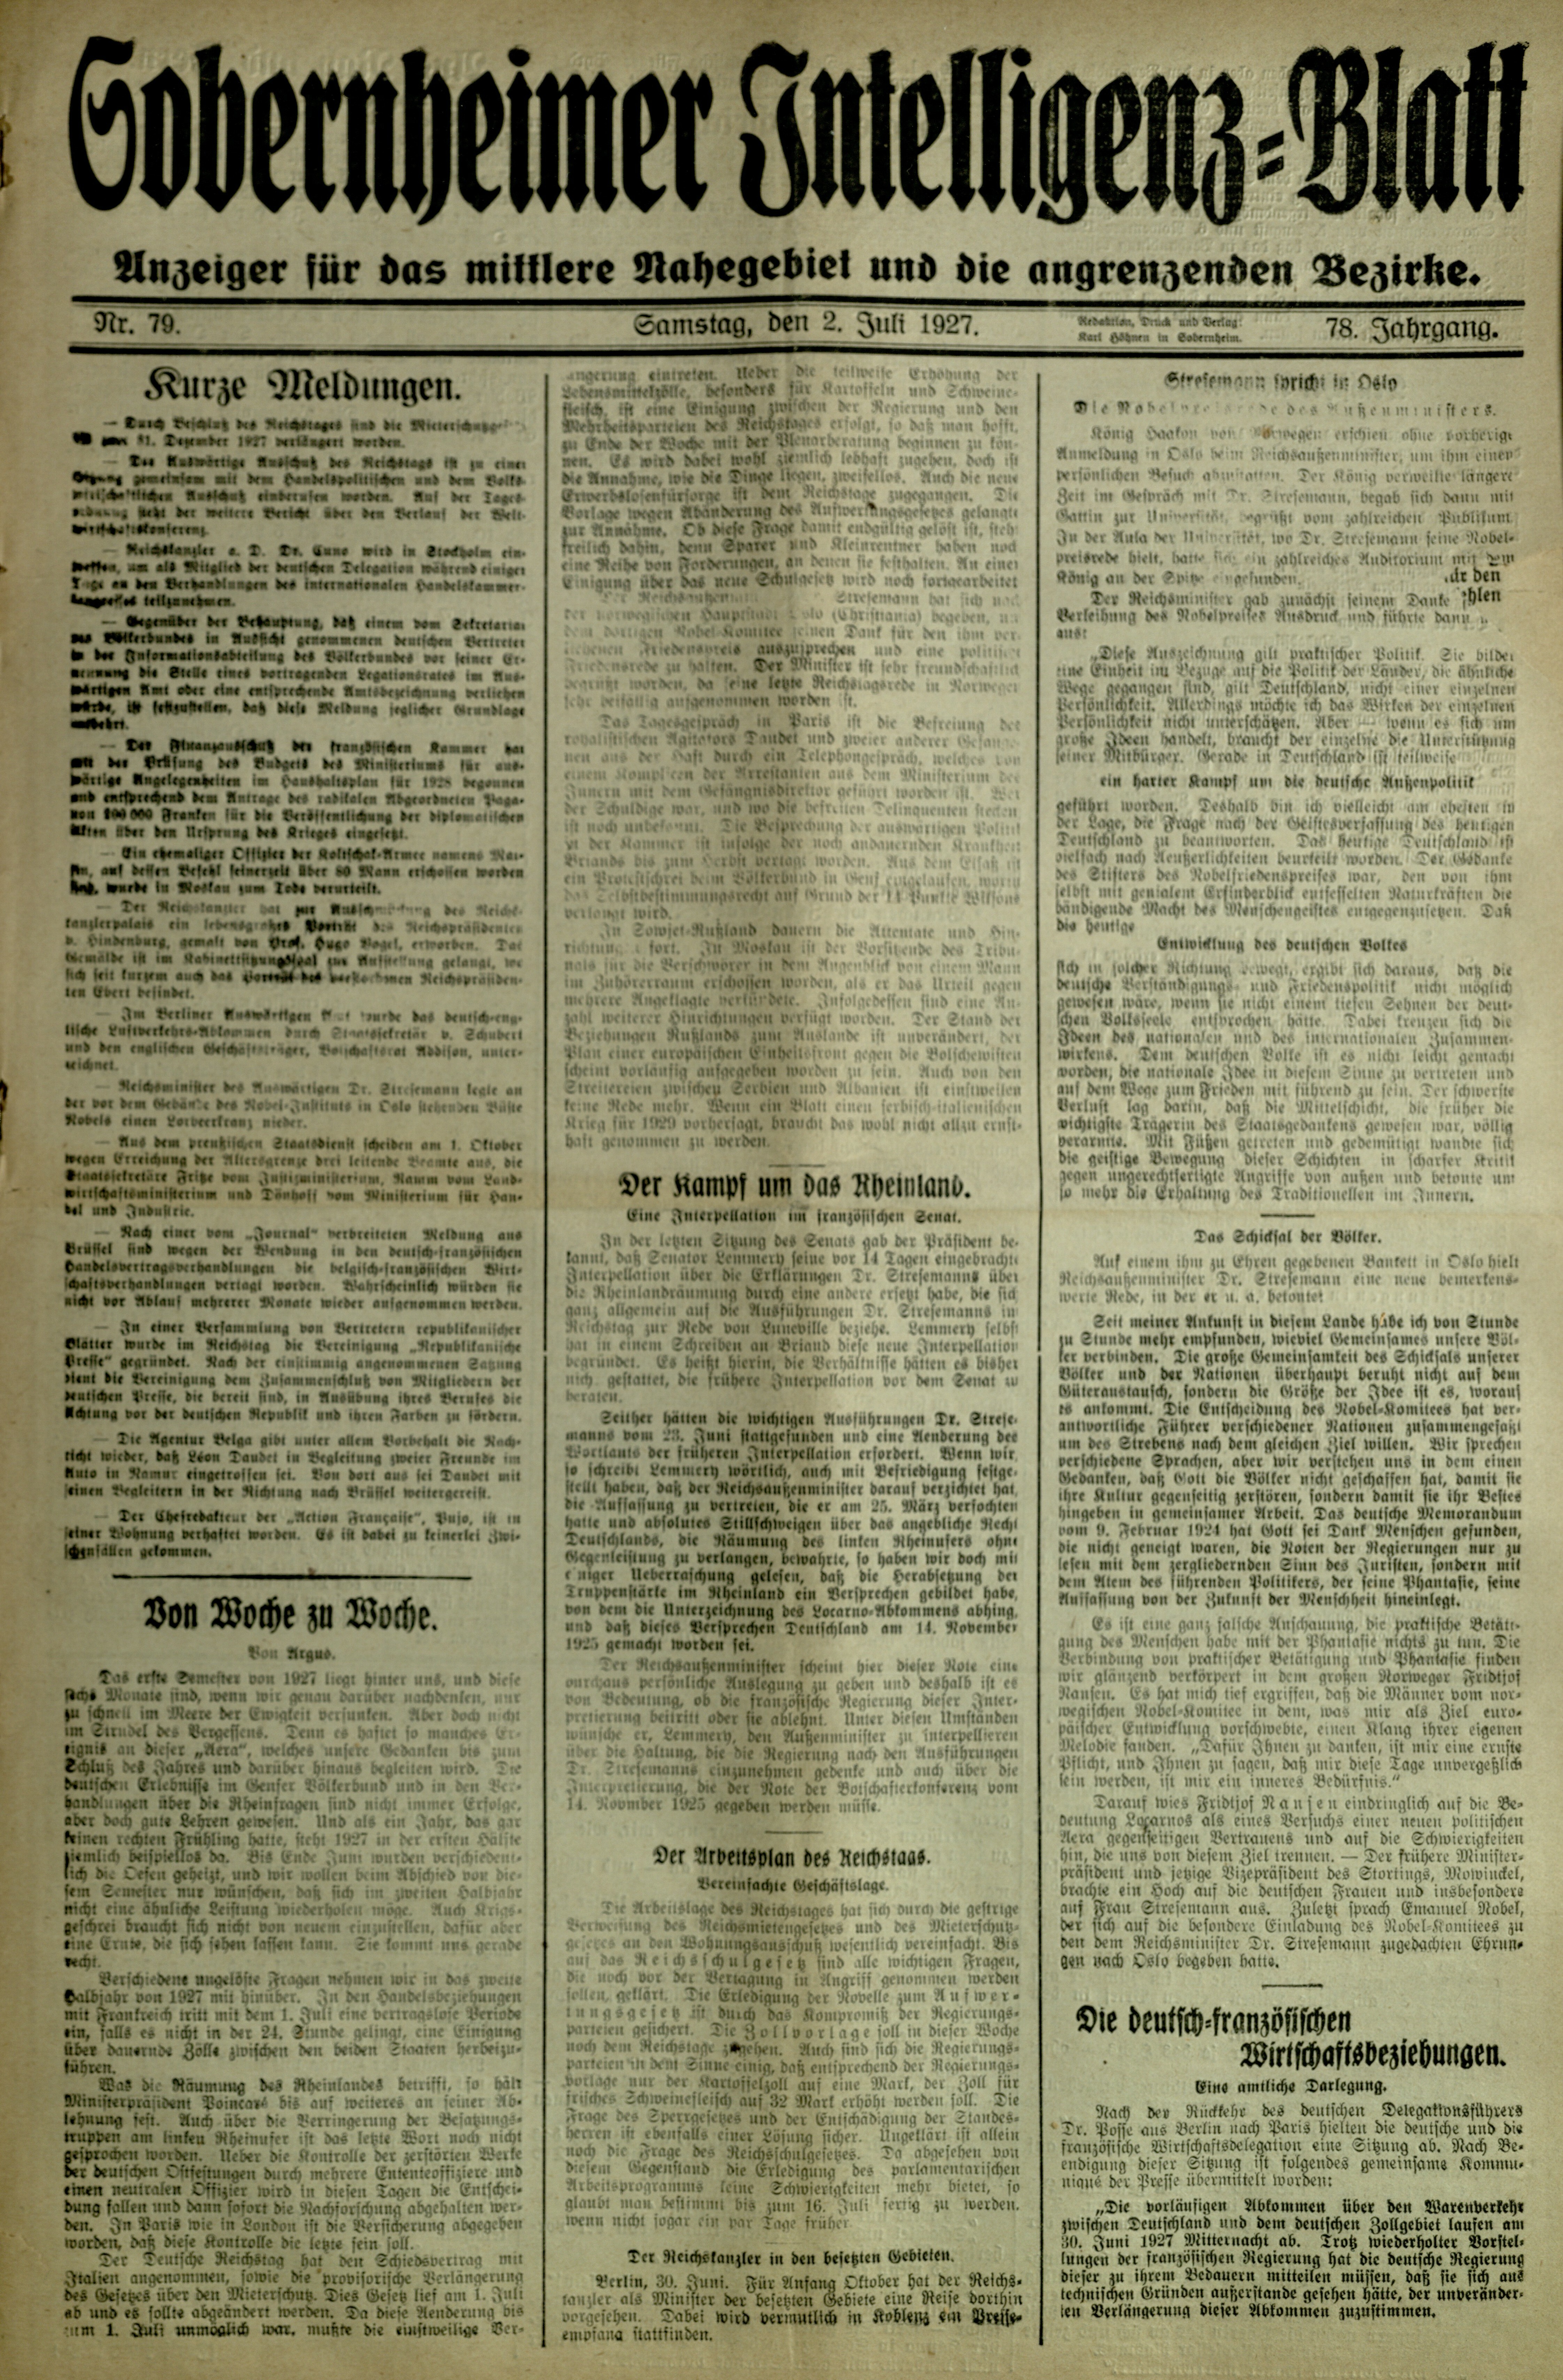 Zeitung: Sobernheimer Intelligenzblatt; Juli 1927, Jg. 78 Nr. 79 (Heimatmuseum Bad Sobernheim CC BY-NC-SA)